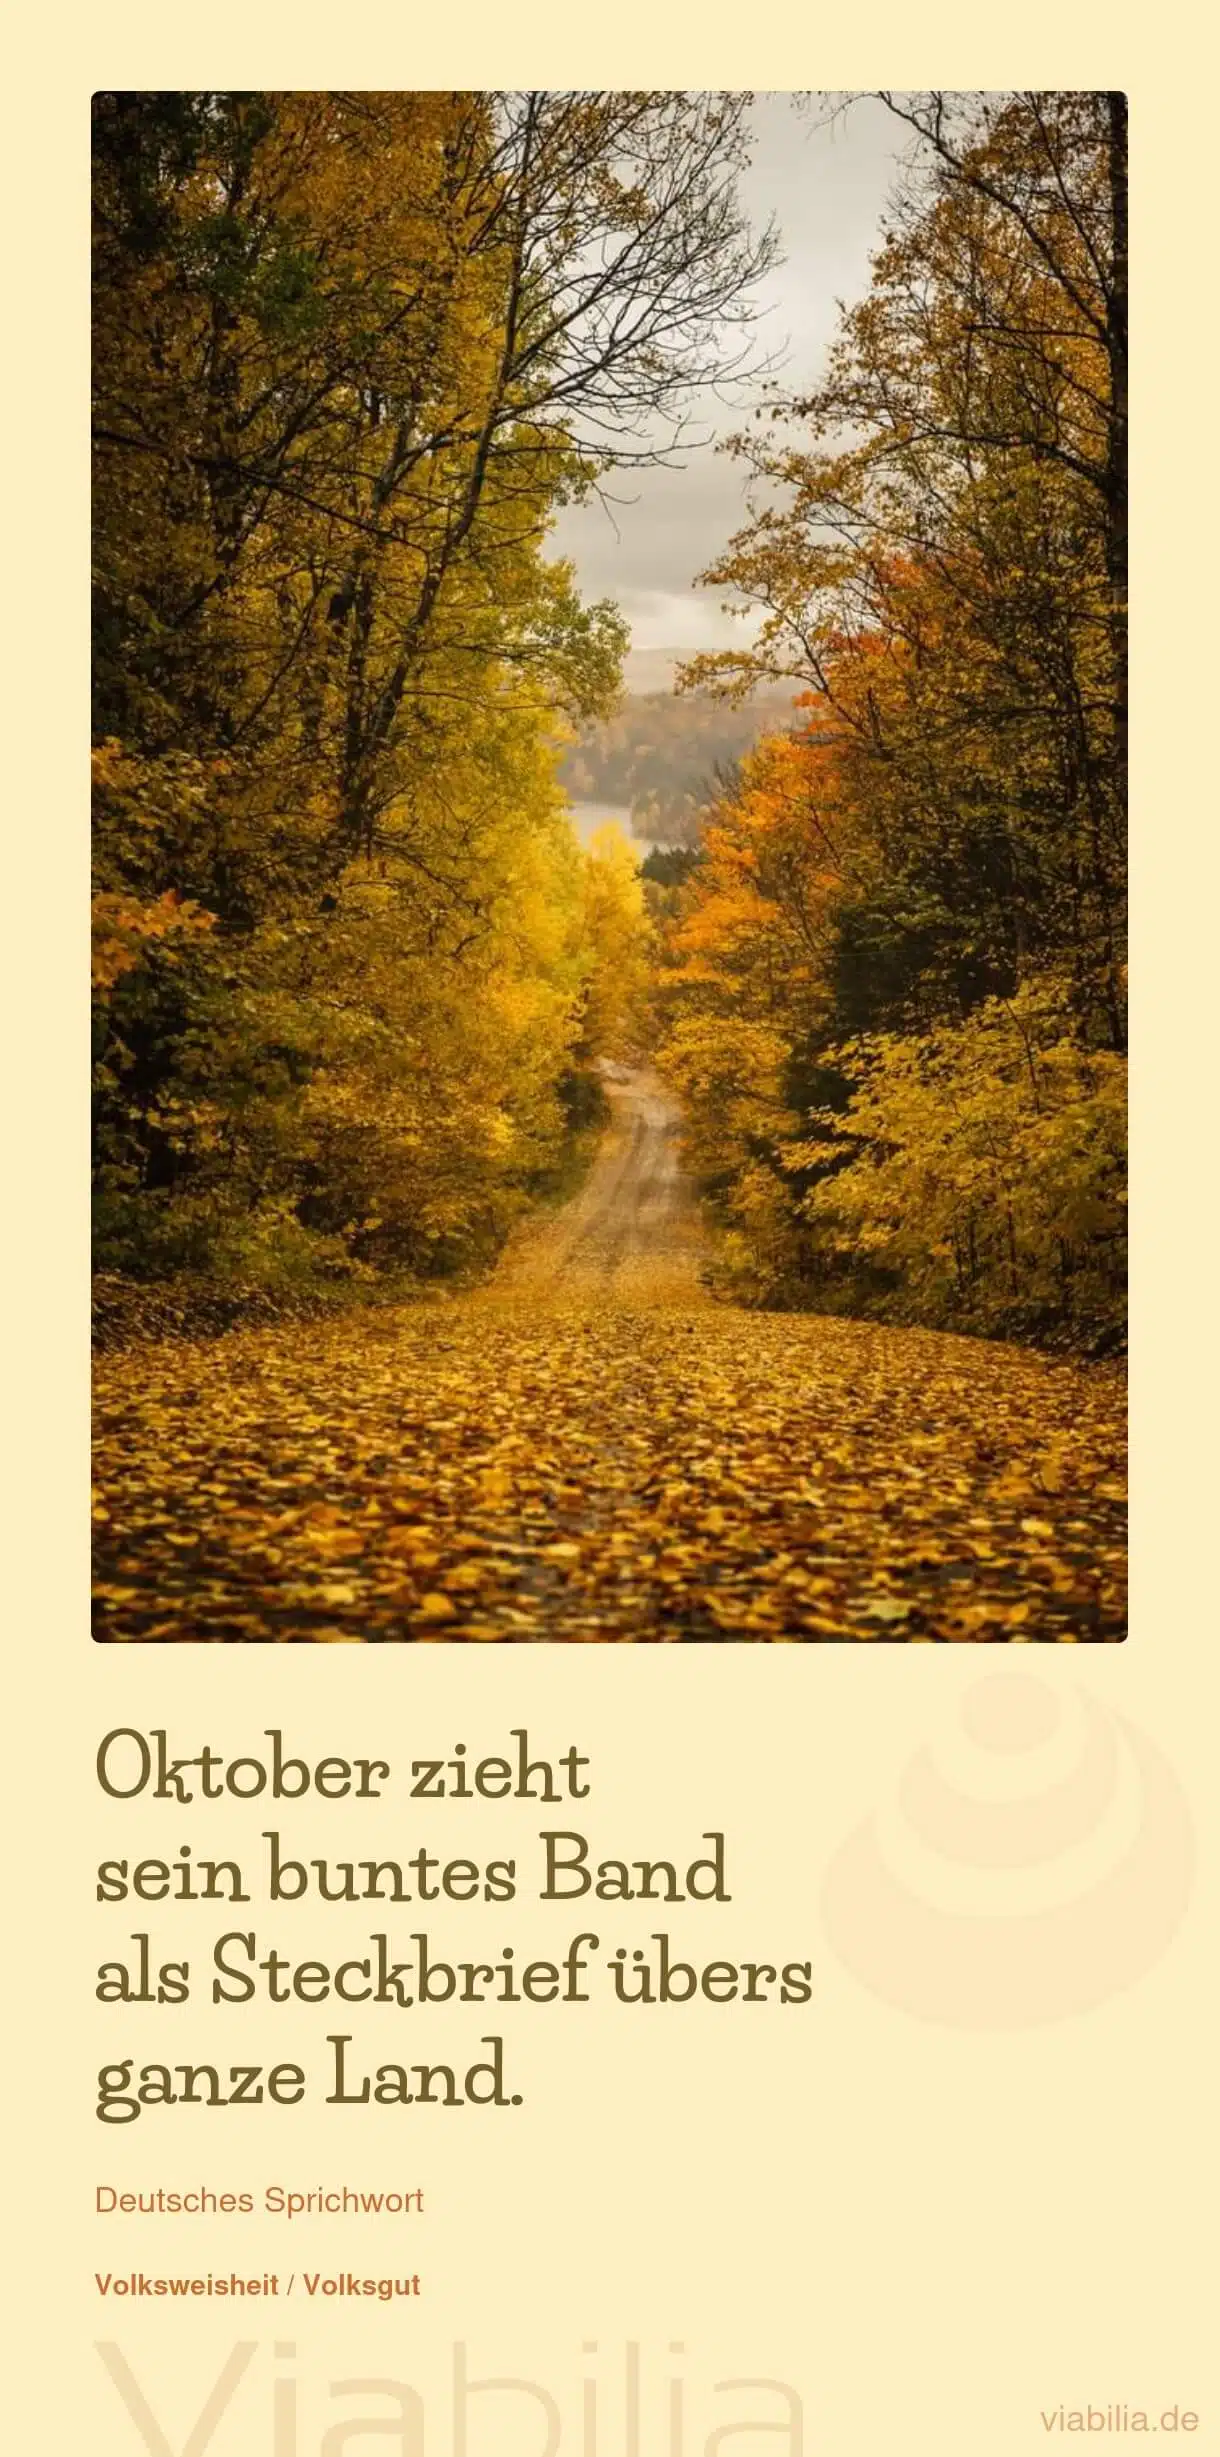 Sprichwort über den Herbst bzw. Oktober